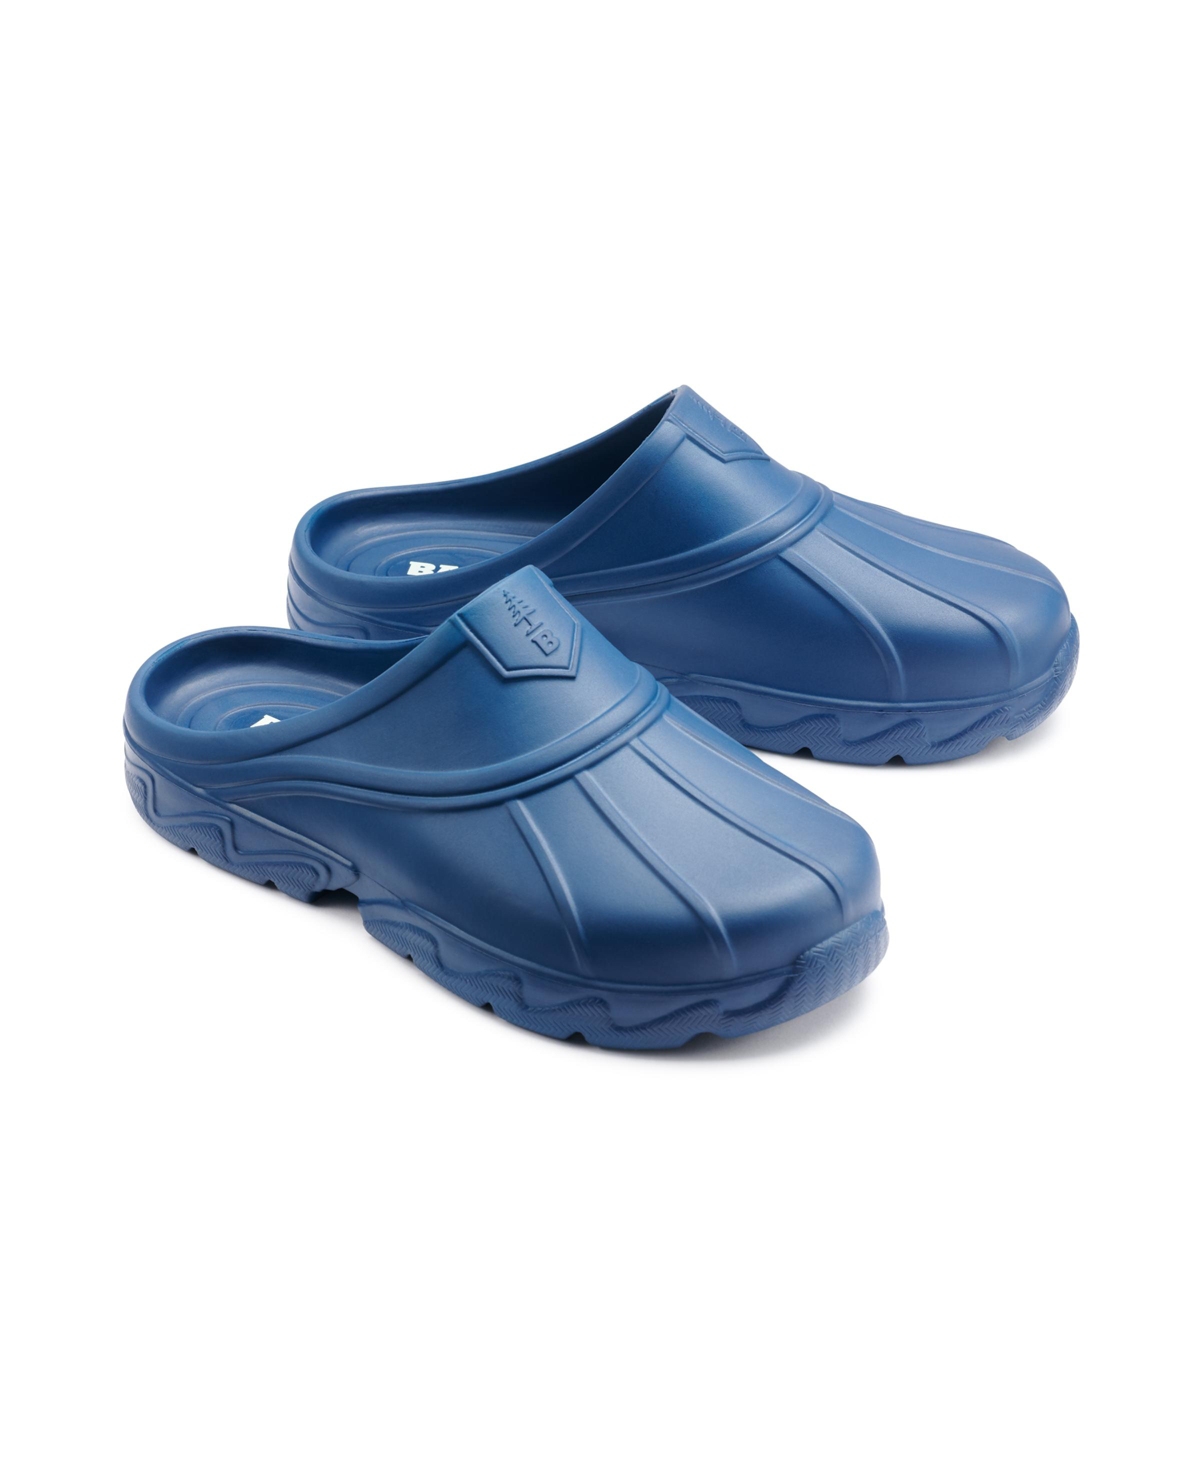 Women's Field Slide Water Shoe - Ensign blue